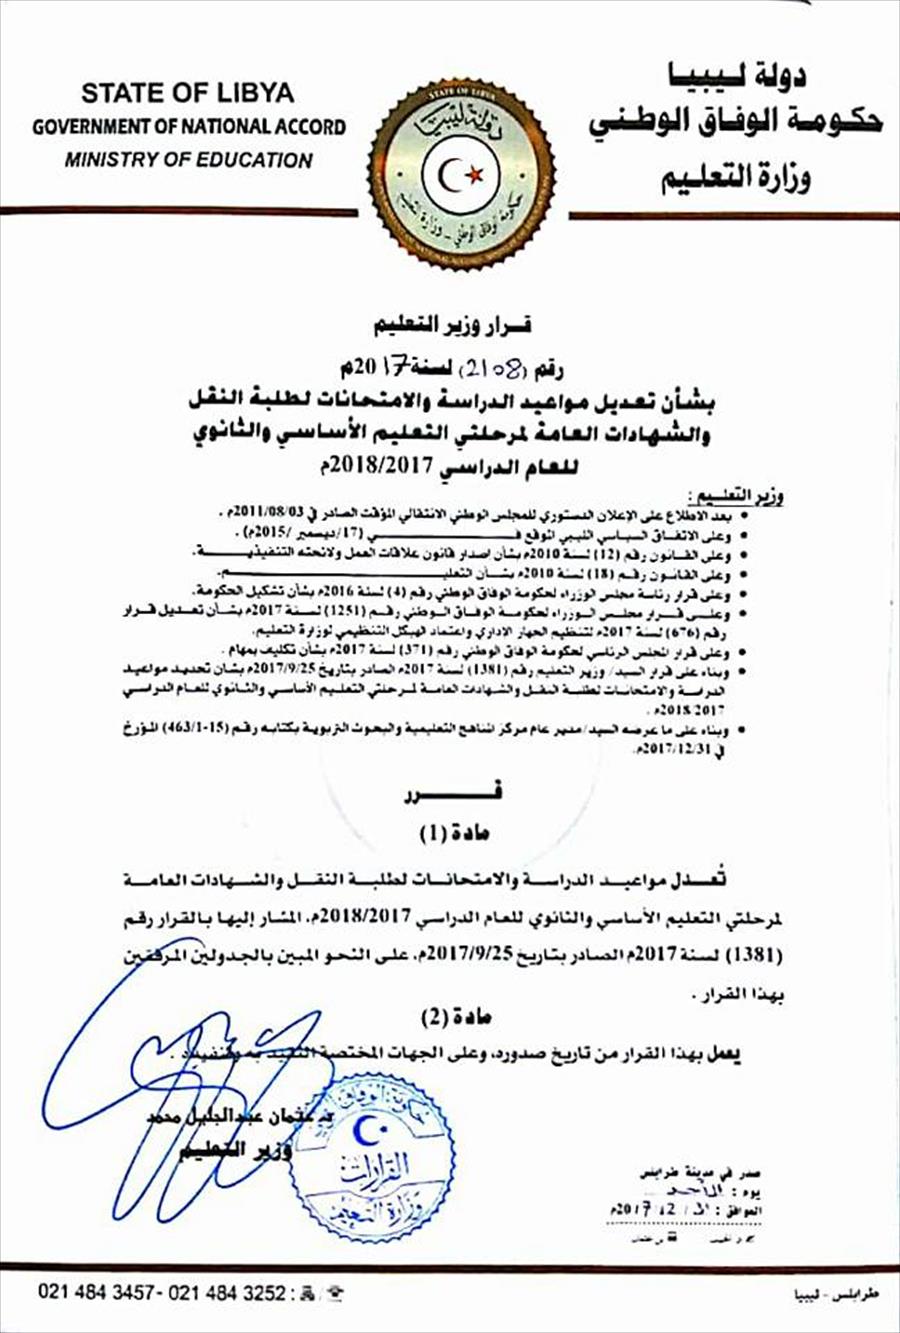 تعليم الوفاق: تعديل مواعيد الدراسة والامتحانات لطلبة النقل والشهادات العامة